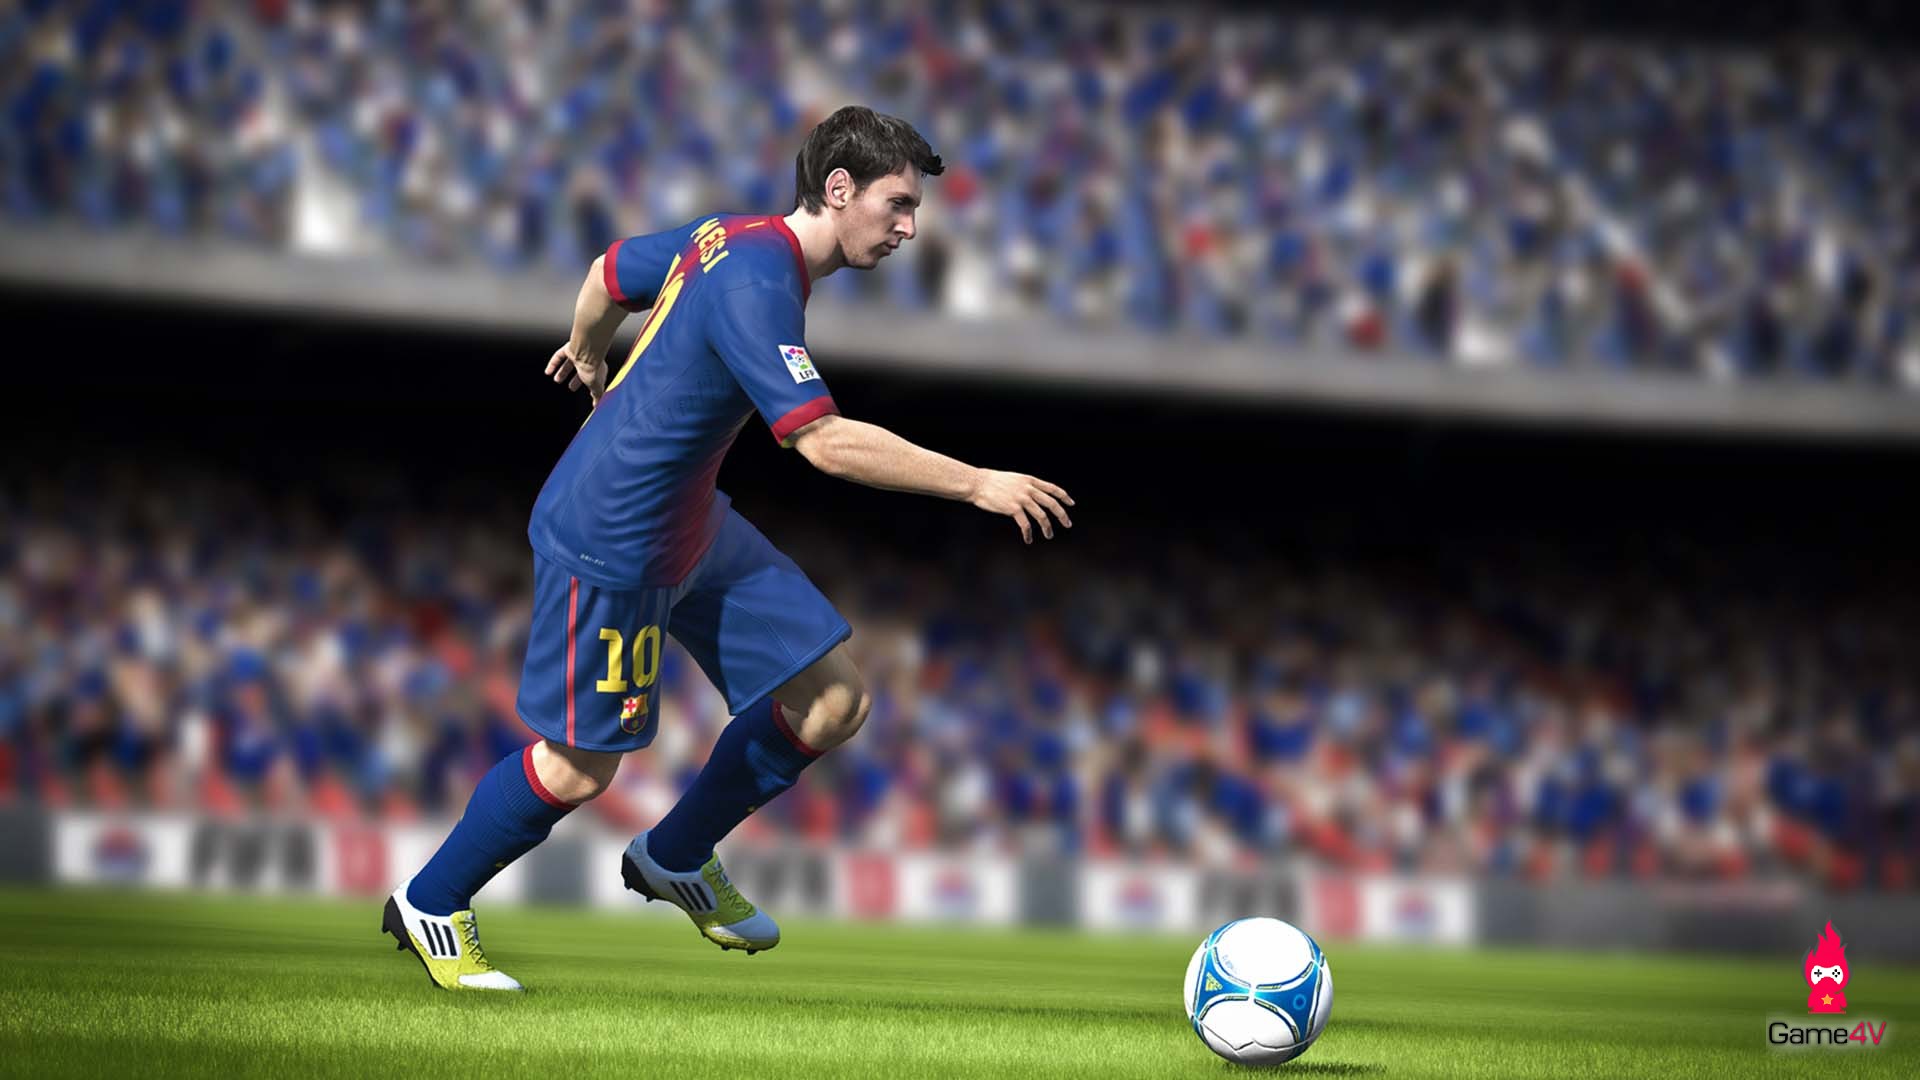 Game thủ FIFA Online 4 bức xúc với cách chăm sóc khách hàng của NPH Garena